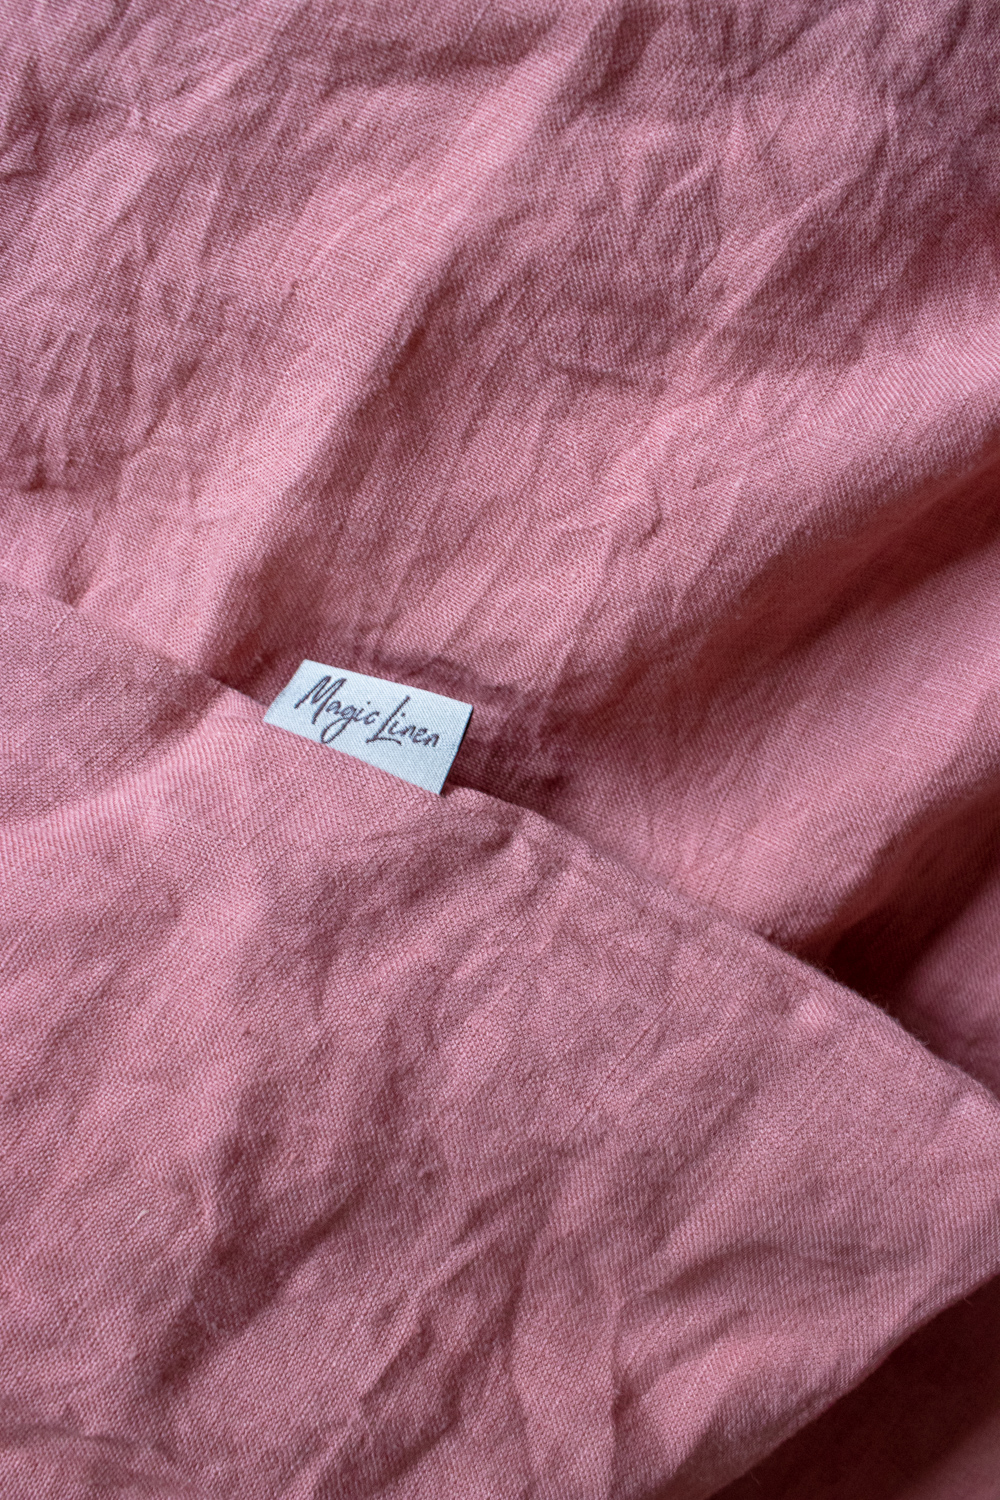 pink linen bedding